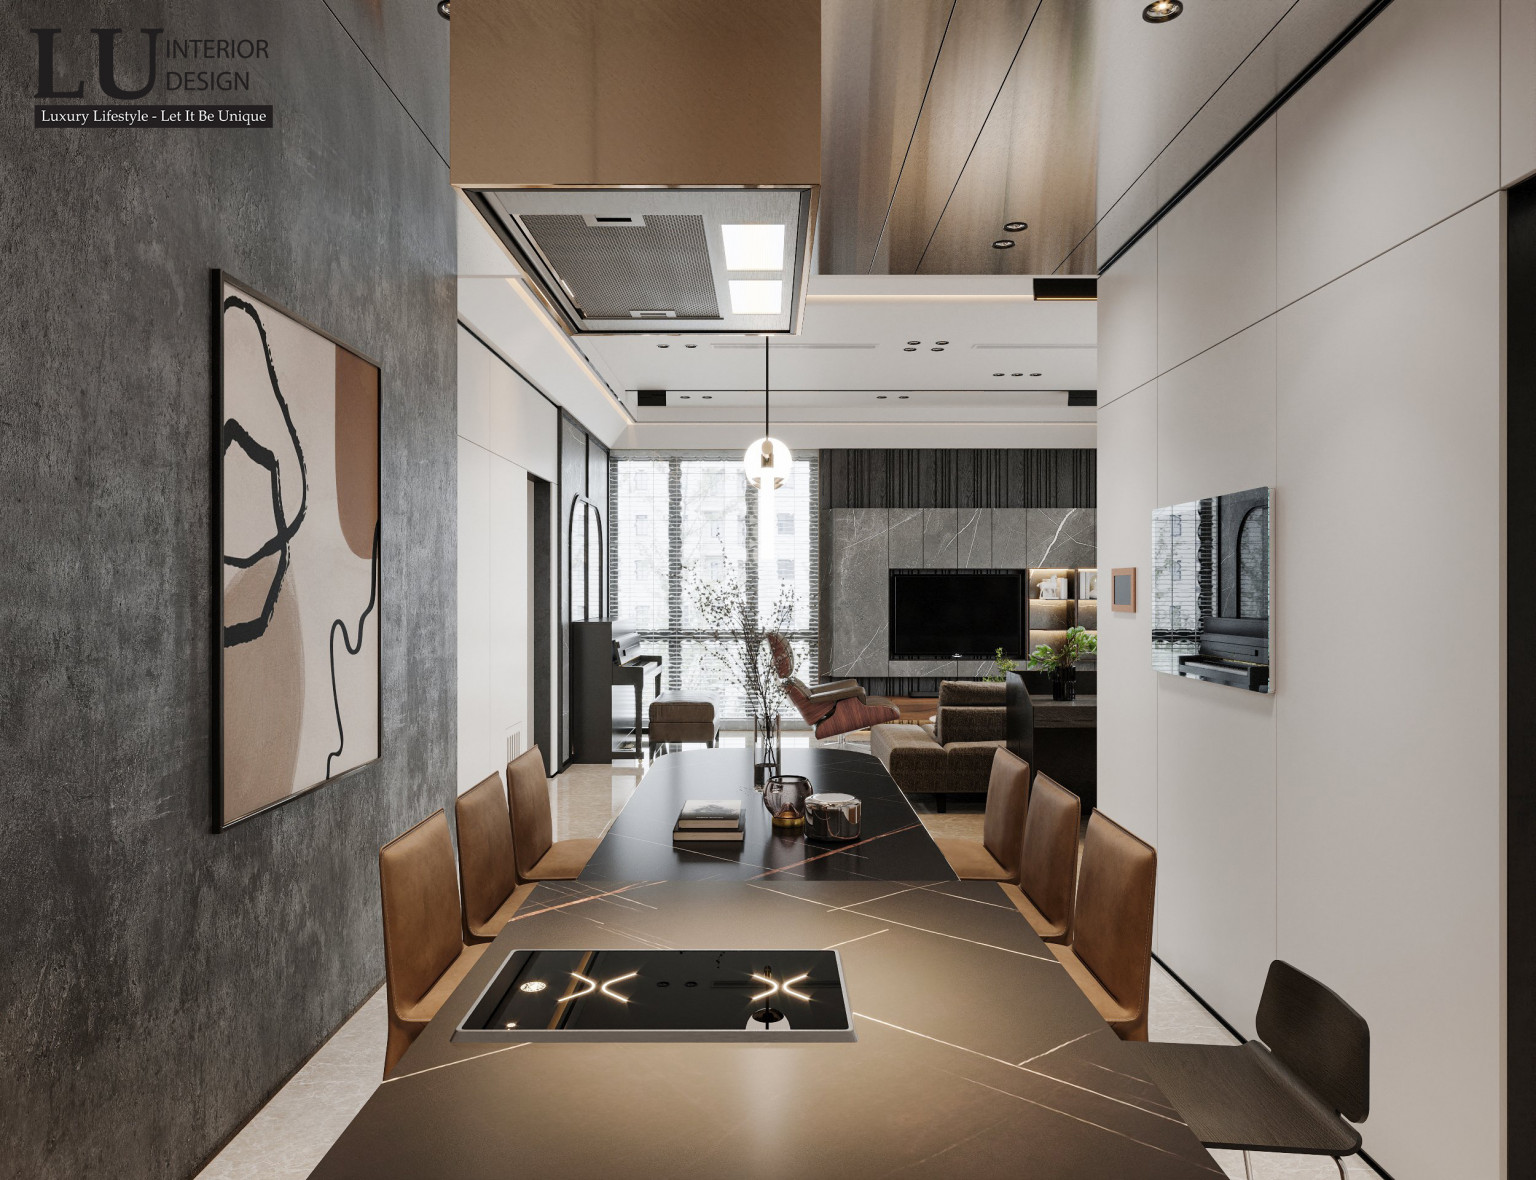 Thiết kế nội thất chung cư hiện đại - tự do & phóng khoáng | Dự án căn hộ The Marq - LU Design thực hiện.